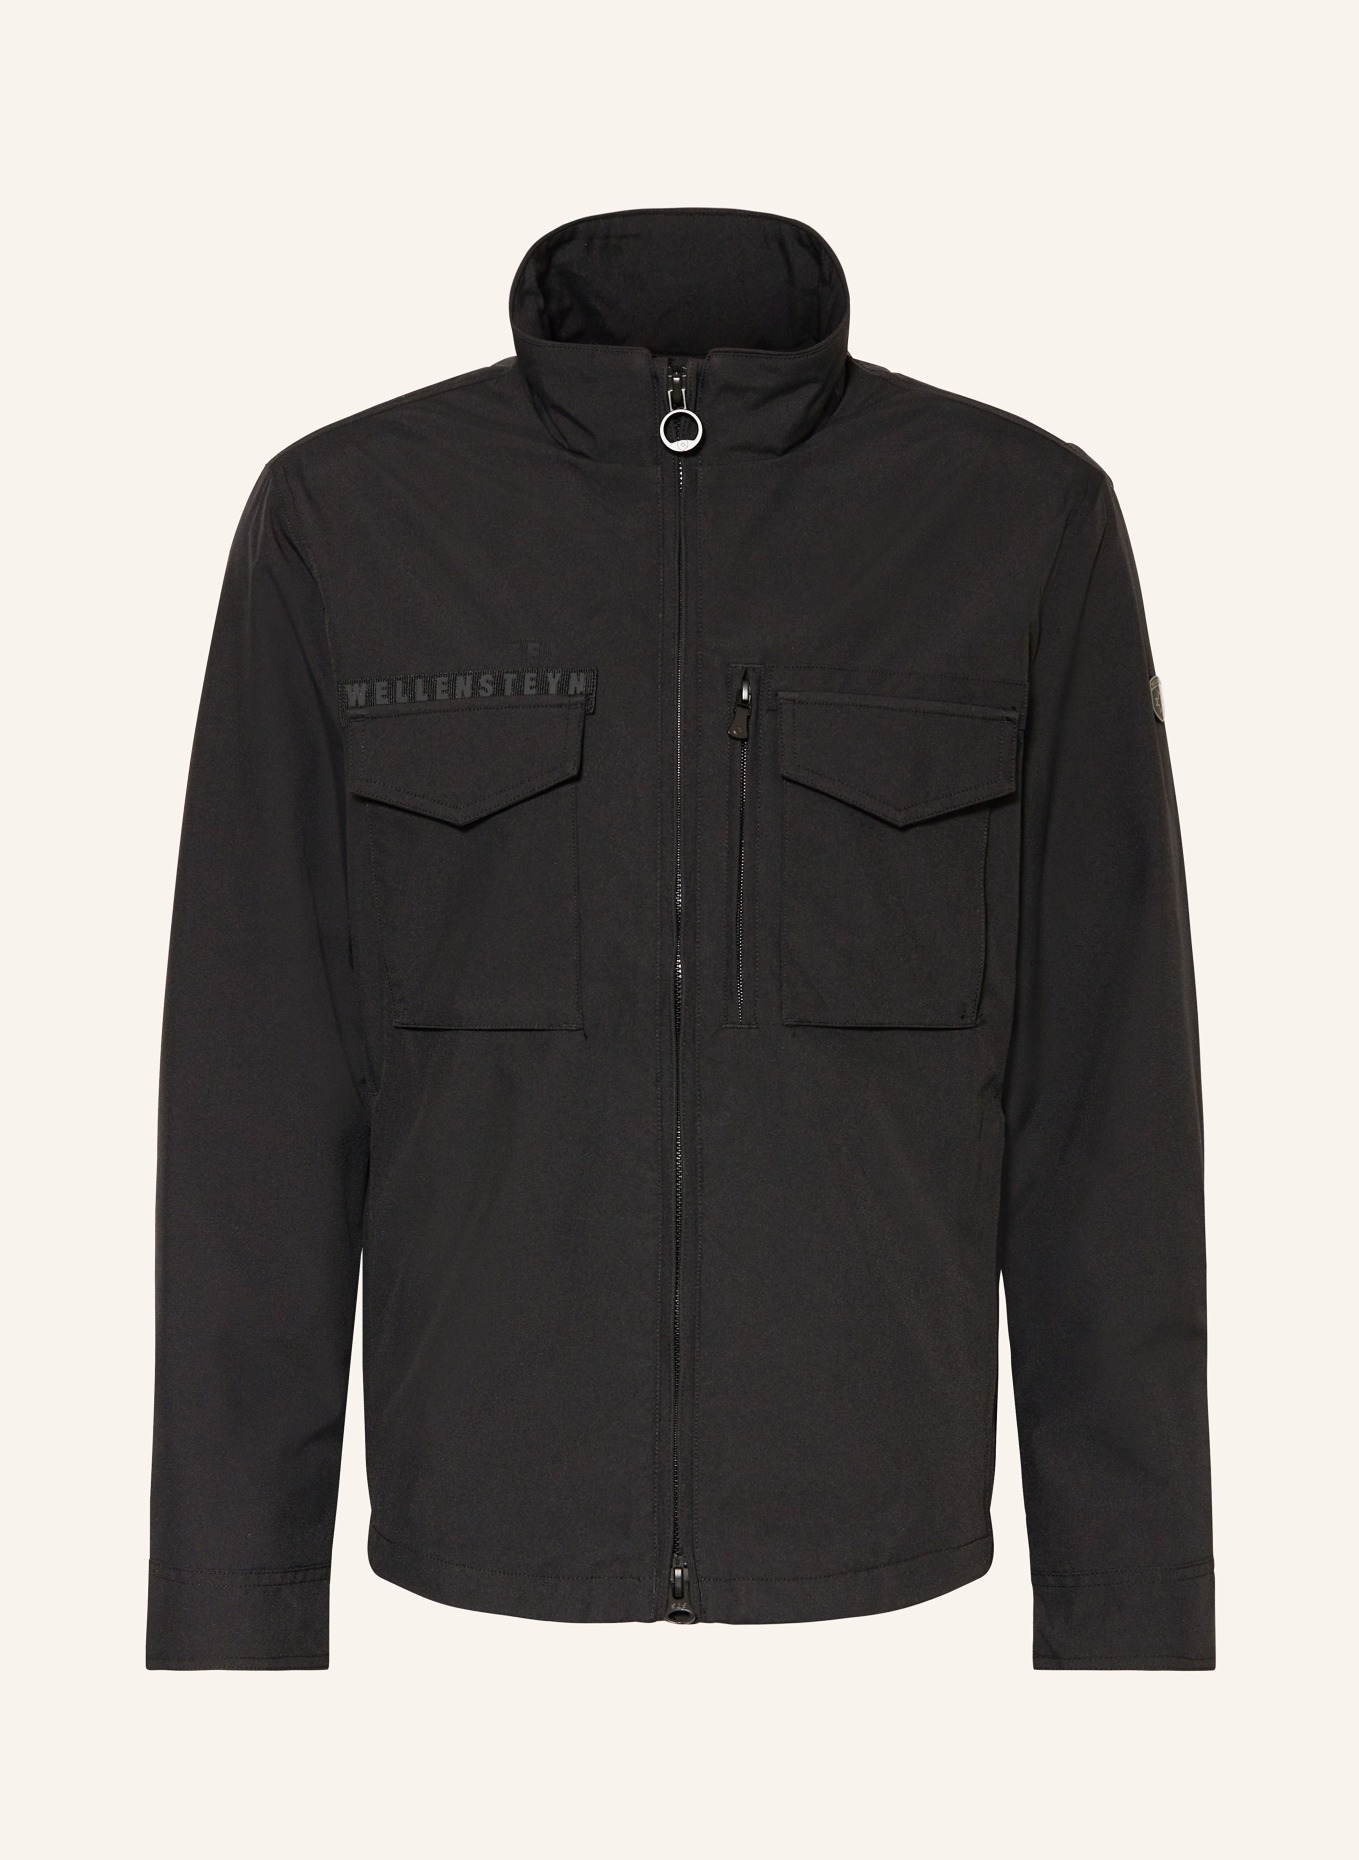 WELLENSTEYN Jacket, Color: BLACK (Image 1)